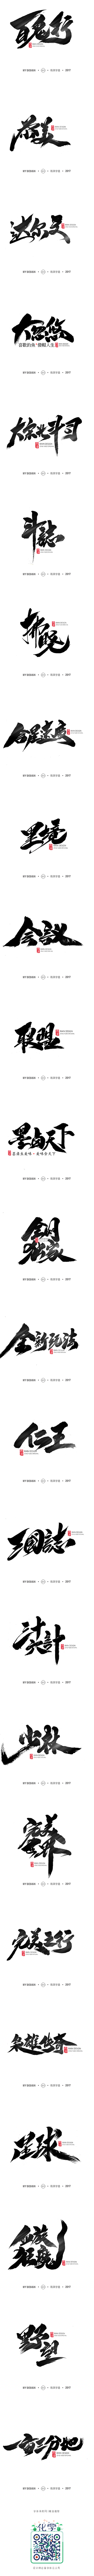 雨泽字造/十一月游戏专题系列2-字体传奇...